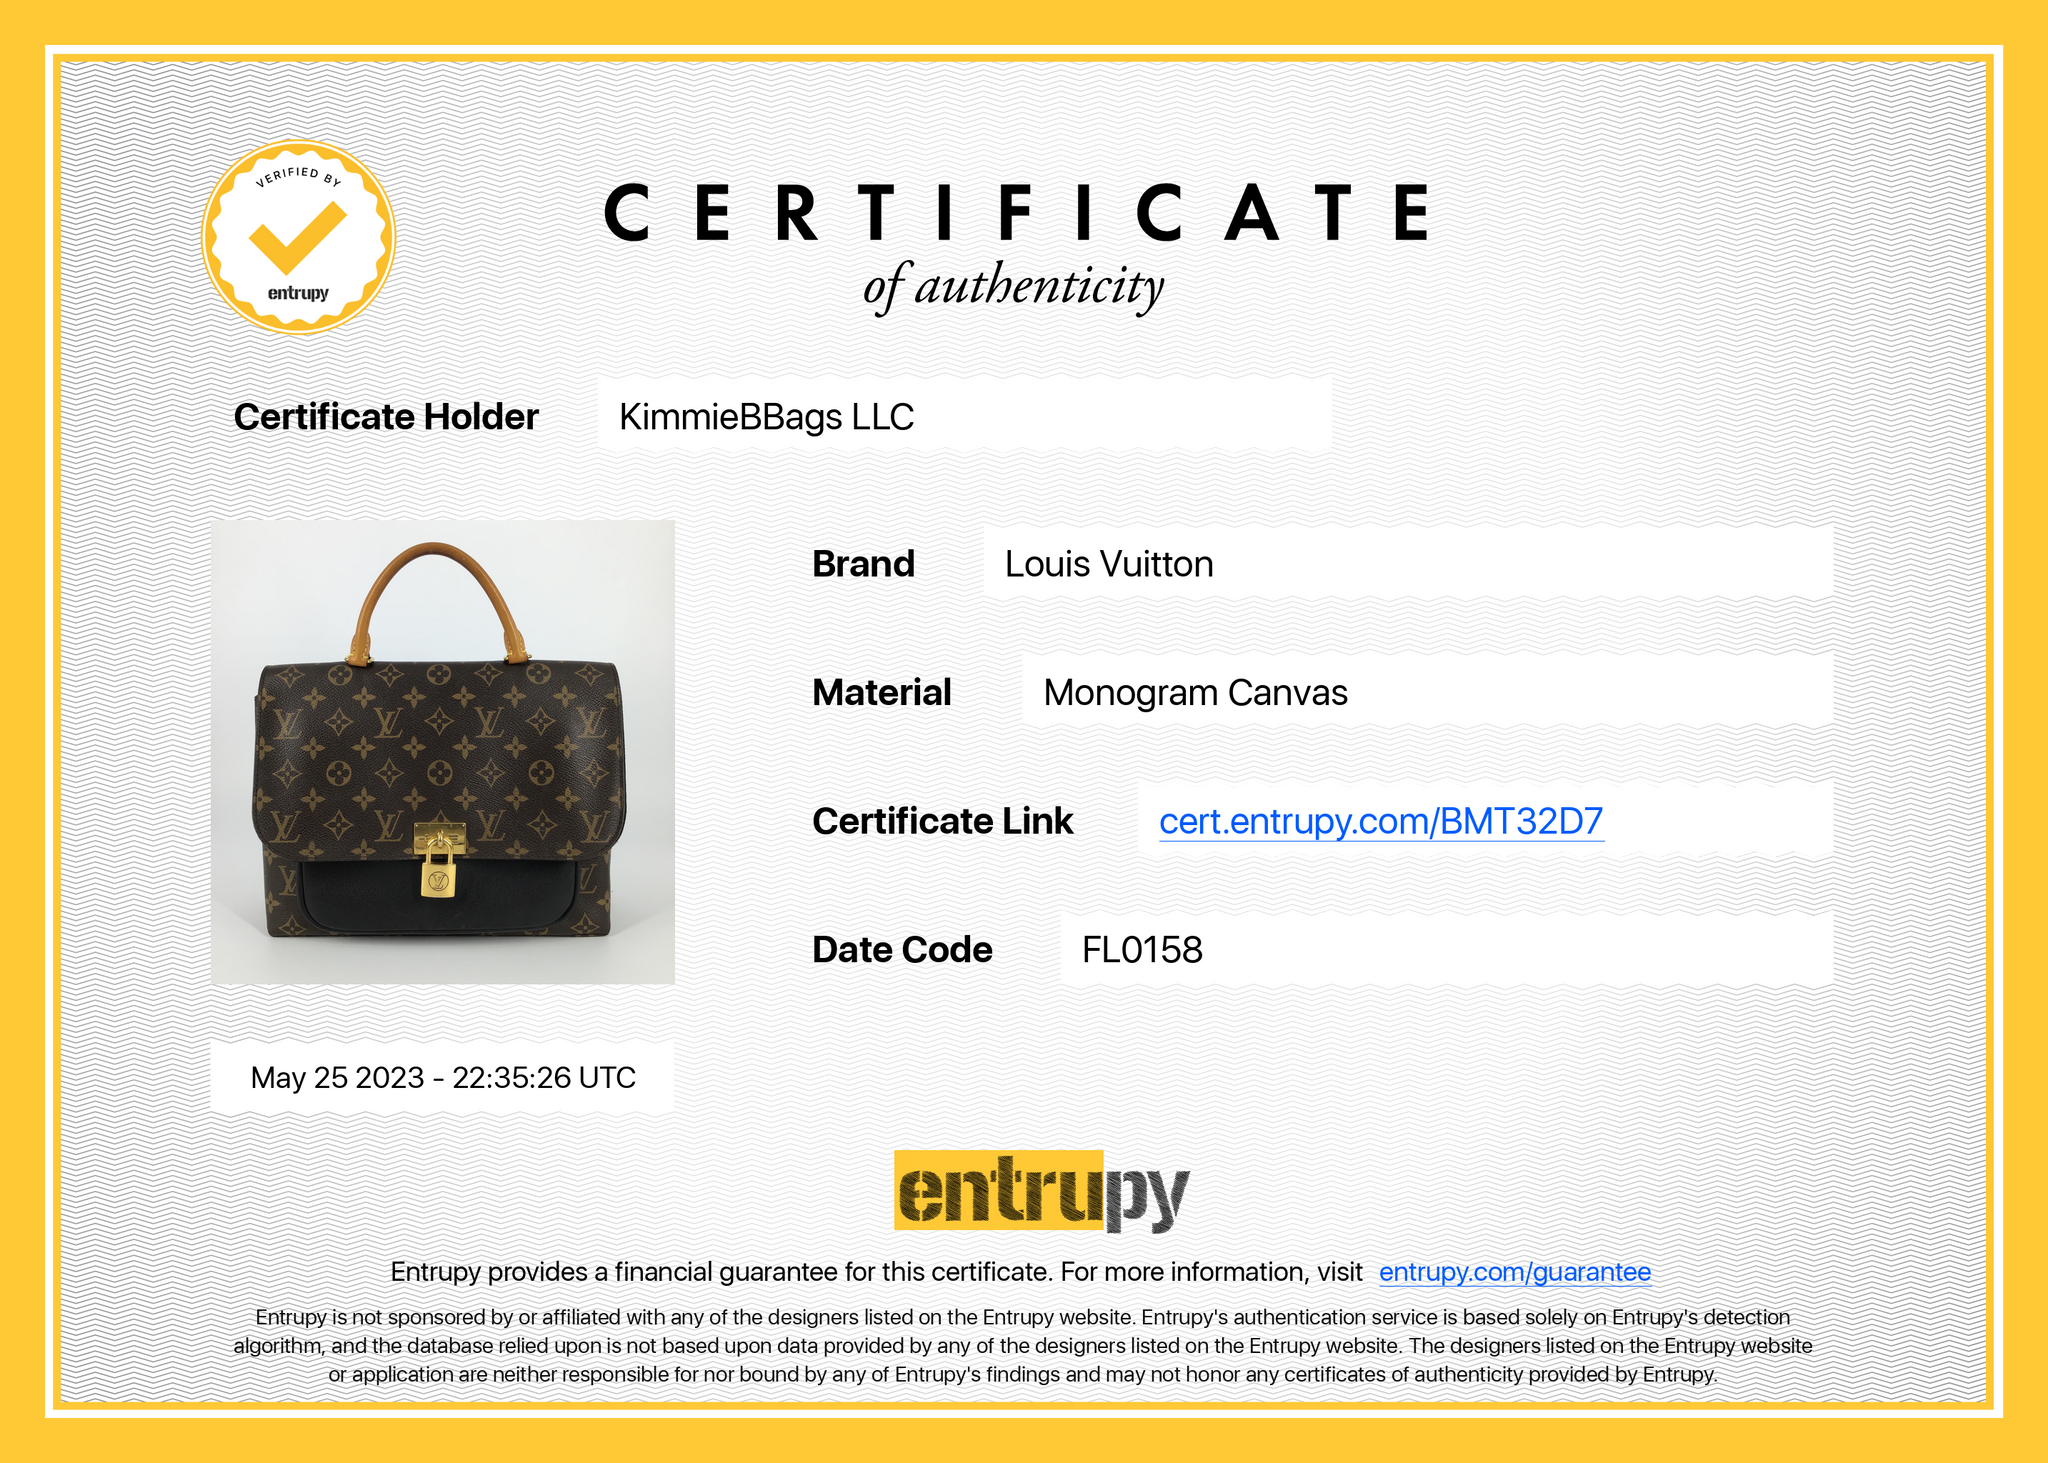 Louis Vuitton Marignan Handbag Monogram Canvas with Leather - ShopStyle  Shoulder Bags